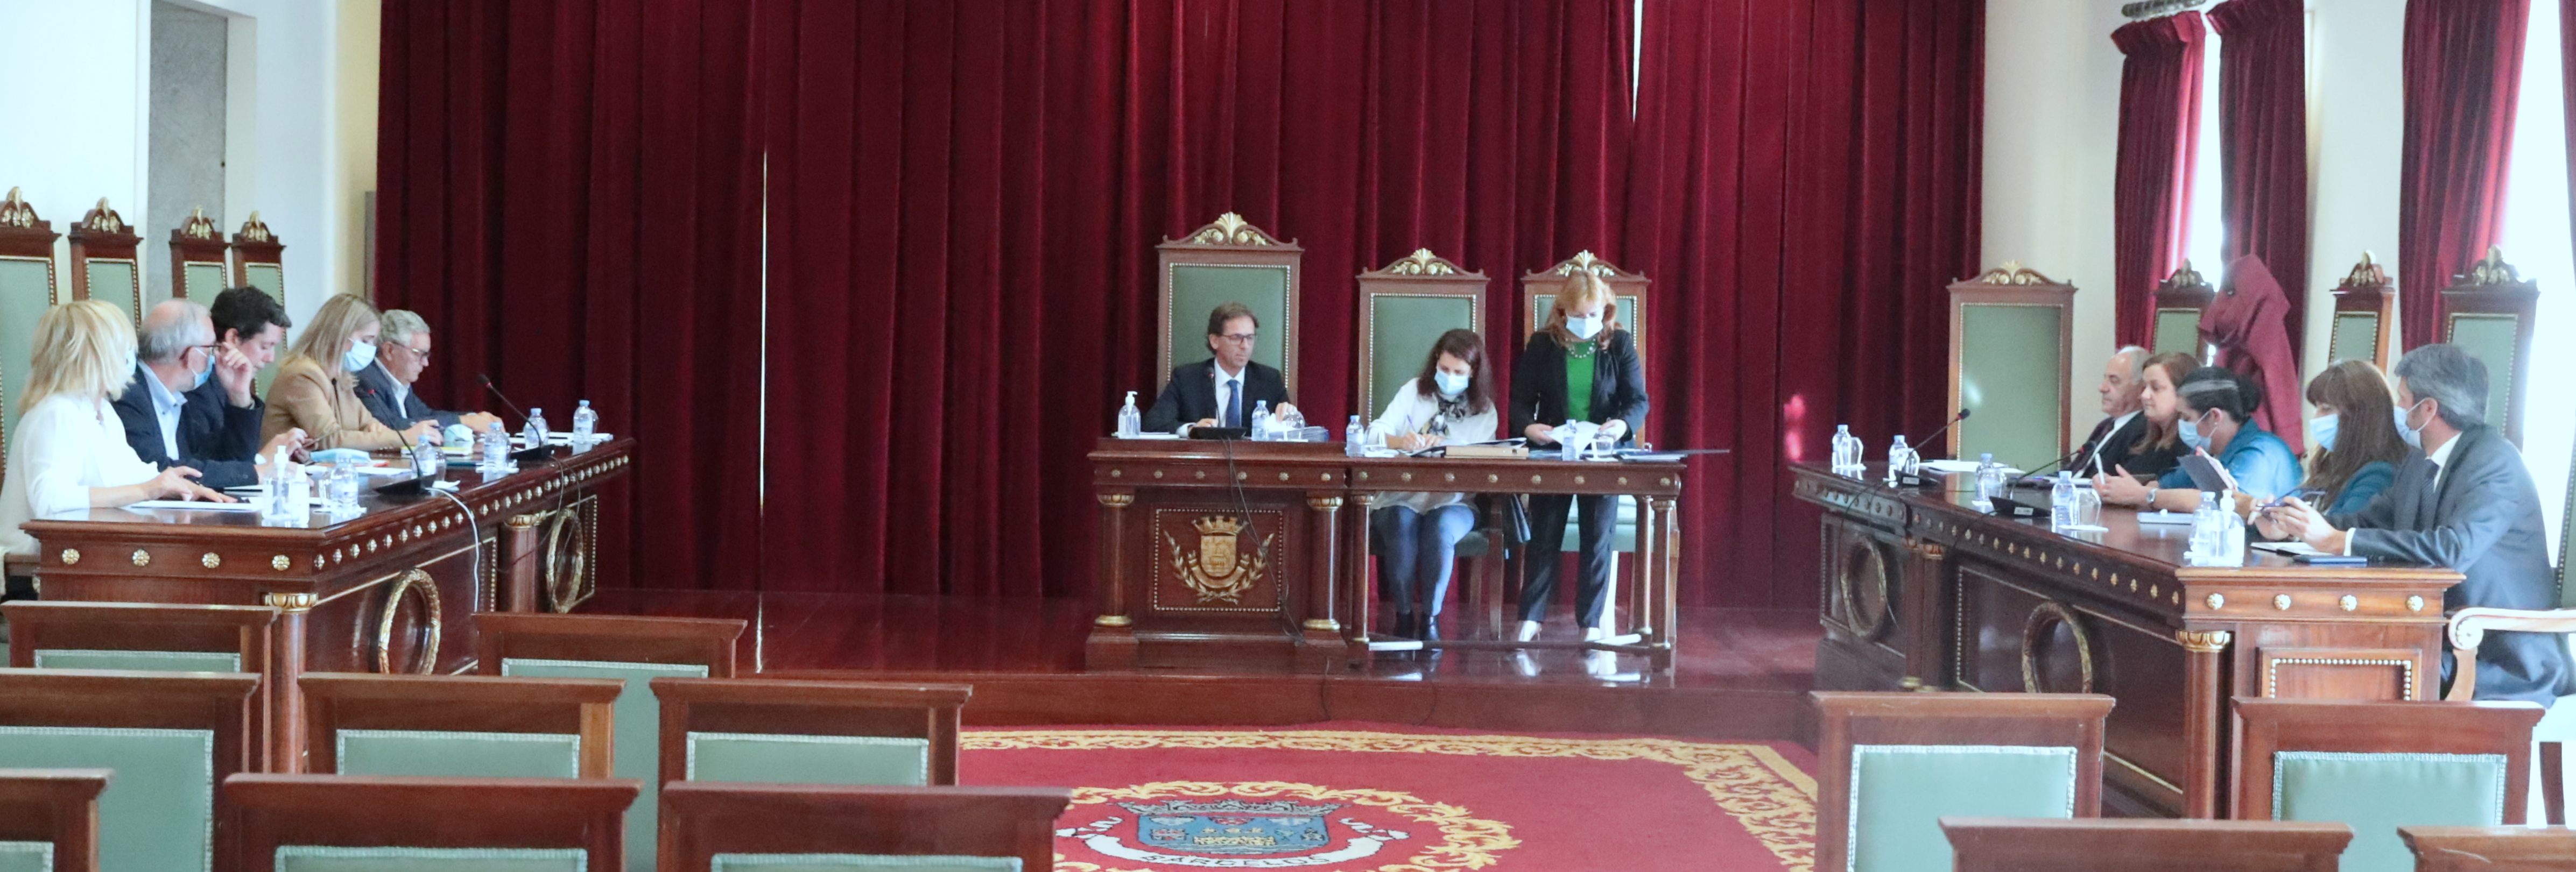 Câmara Municipal de Barcelos aprova regimento das reuniões do Executivo